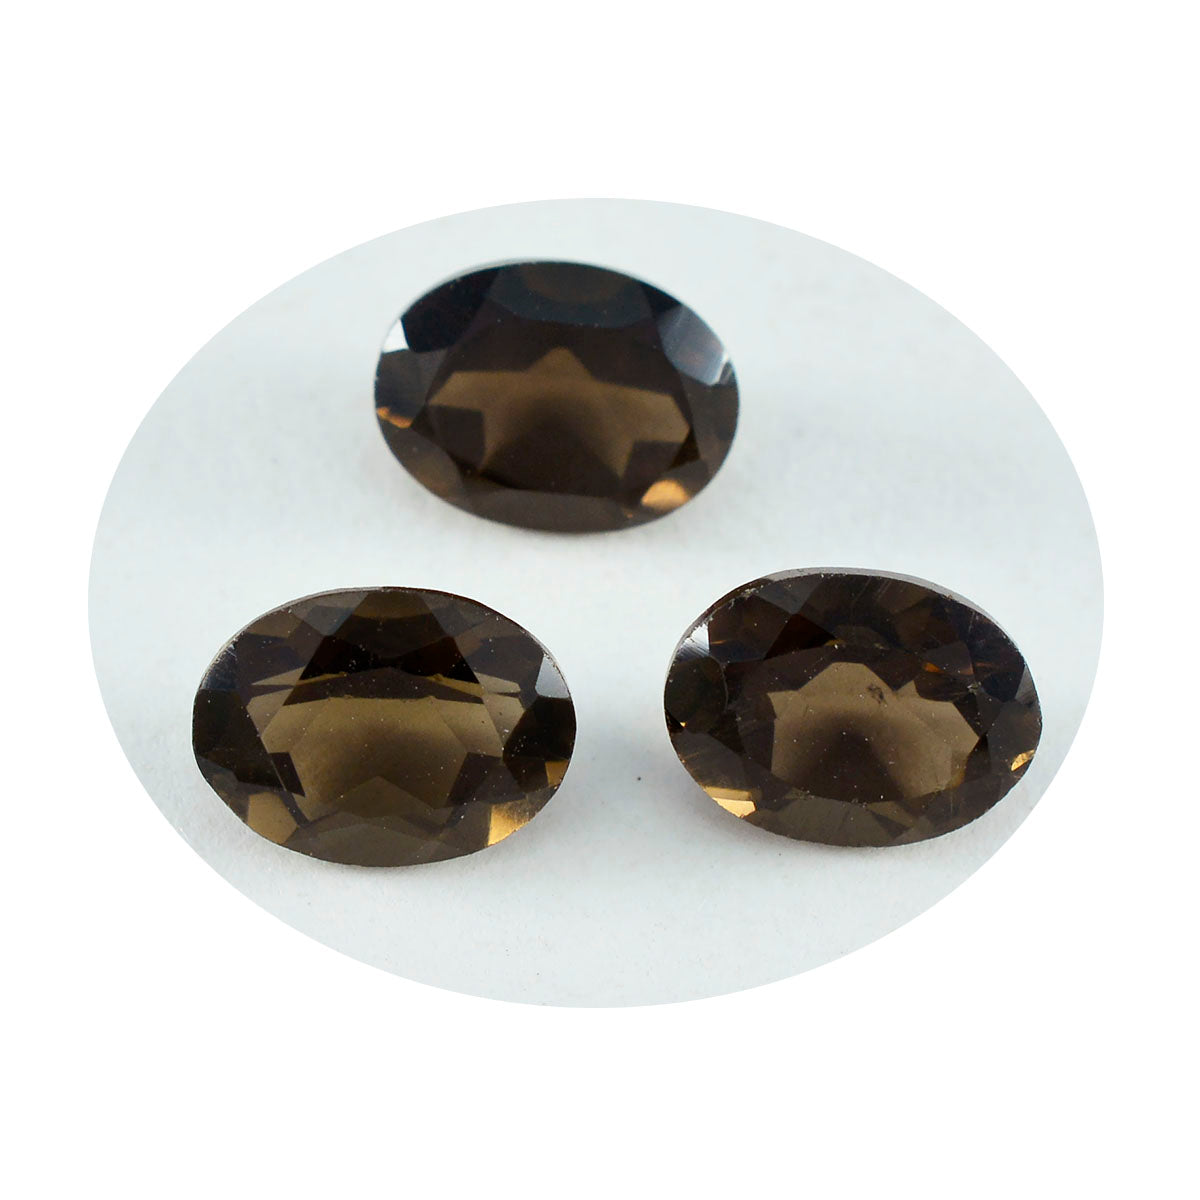 Riyogems 1PC natuurlijk bruin rookkwarts gefacetteerd 7x9 mm ovale vorm mooie kwaliteit losse edelsteen